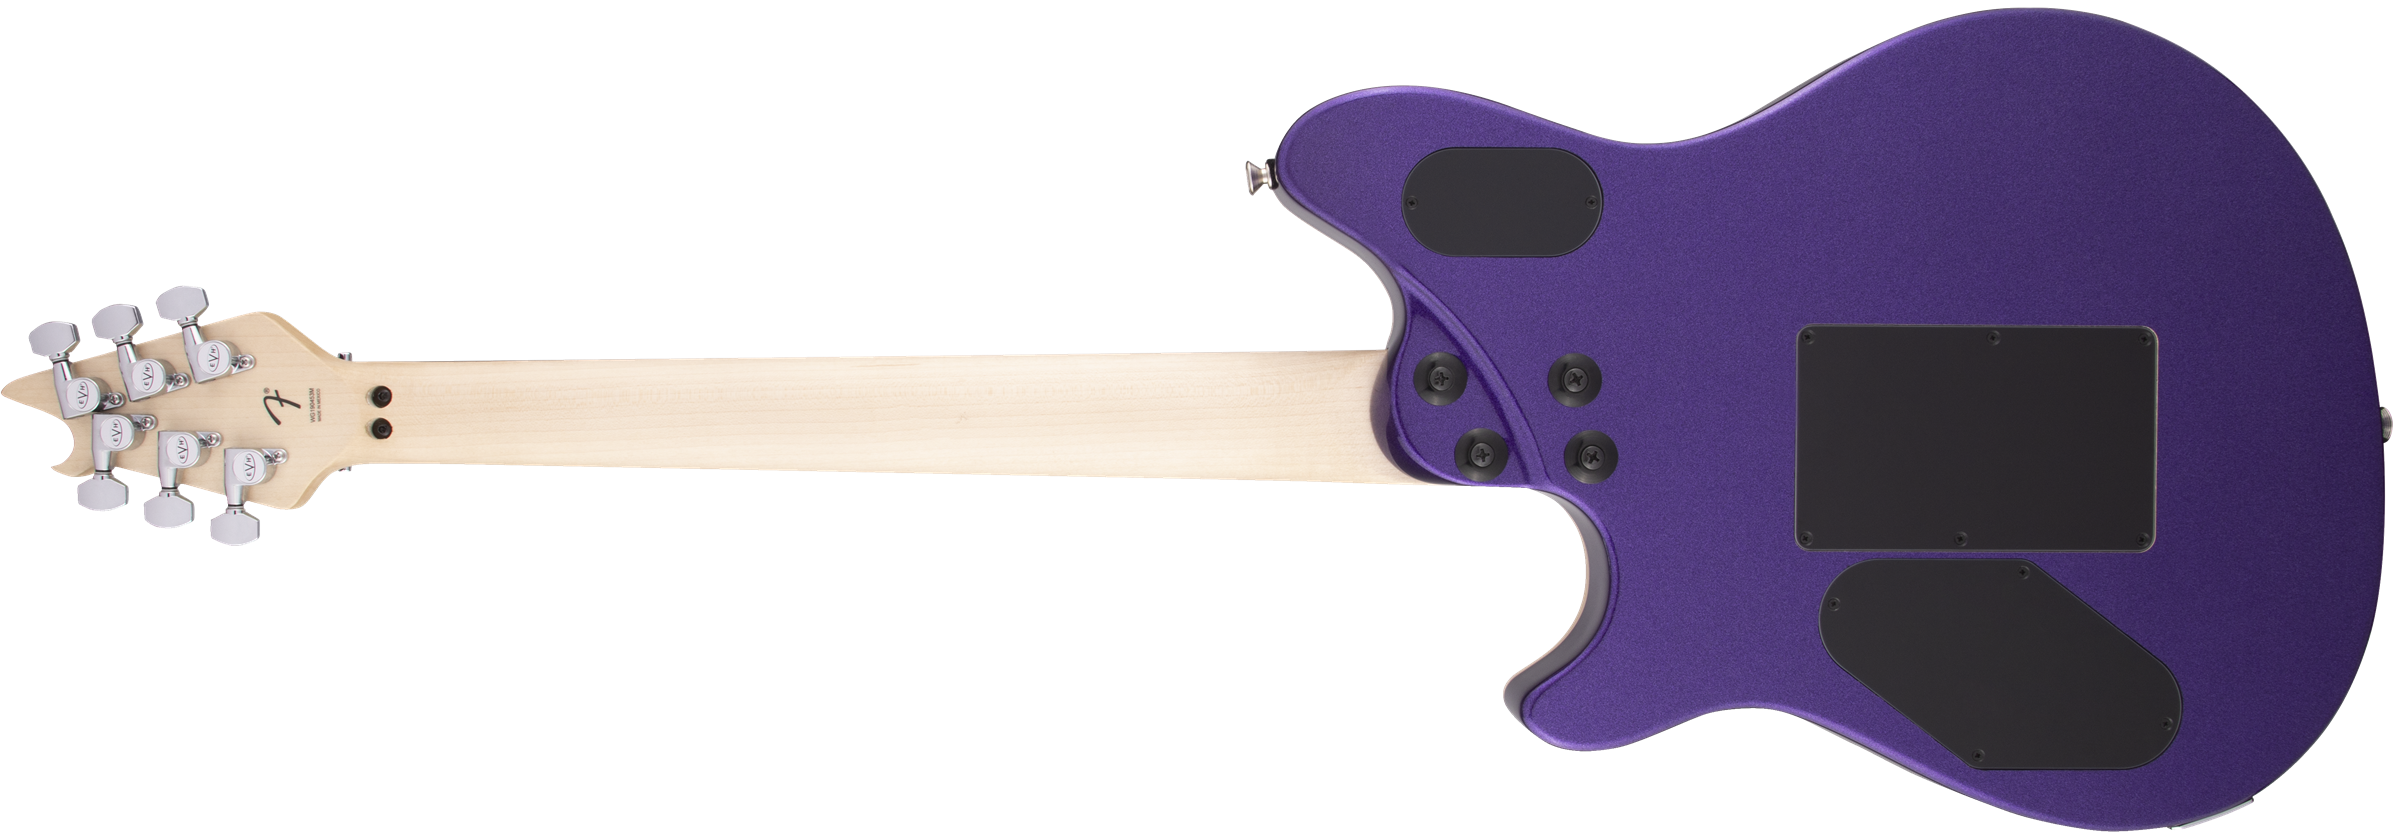 EVH Wolfgang Special Ebony Fingerboard Deep Purple Metallic 5107701552 SERIAL NUMBER WG222192M - 7.2 LBS